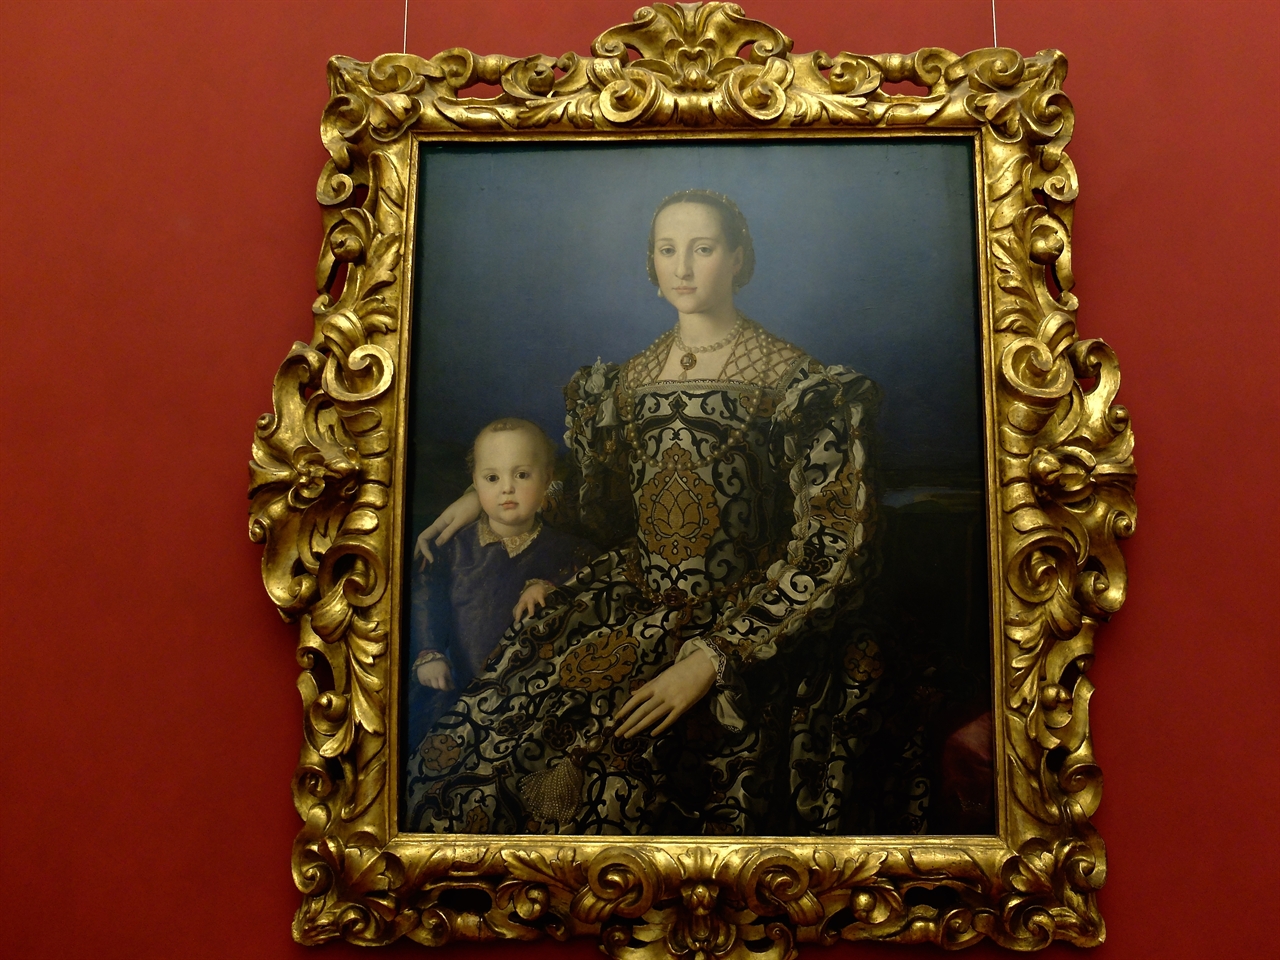 이뇰로 브론치노, ‘톨레도의 엘레오노라와 그녀의 아들 조반니의 초상’, 피렌체 우피치미술관, 독재적 정치를 펼쳤던 코시모 1세의 아내 엘레오노라와 아들의 초상으로 브론치노 특유의 매끄럽고 화려한 인물묘사가 돋보입니다.